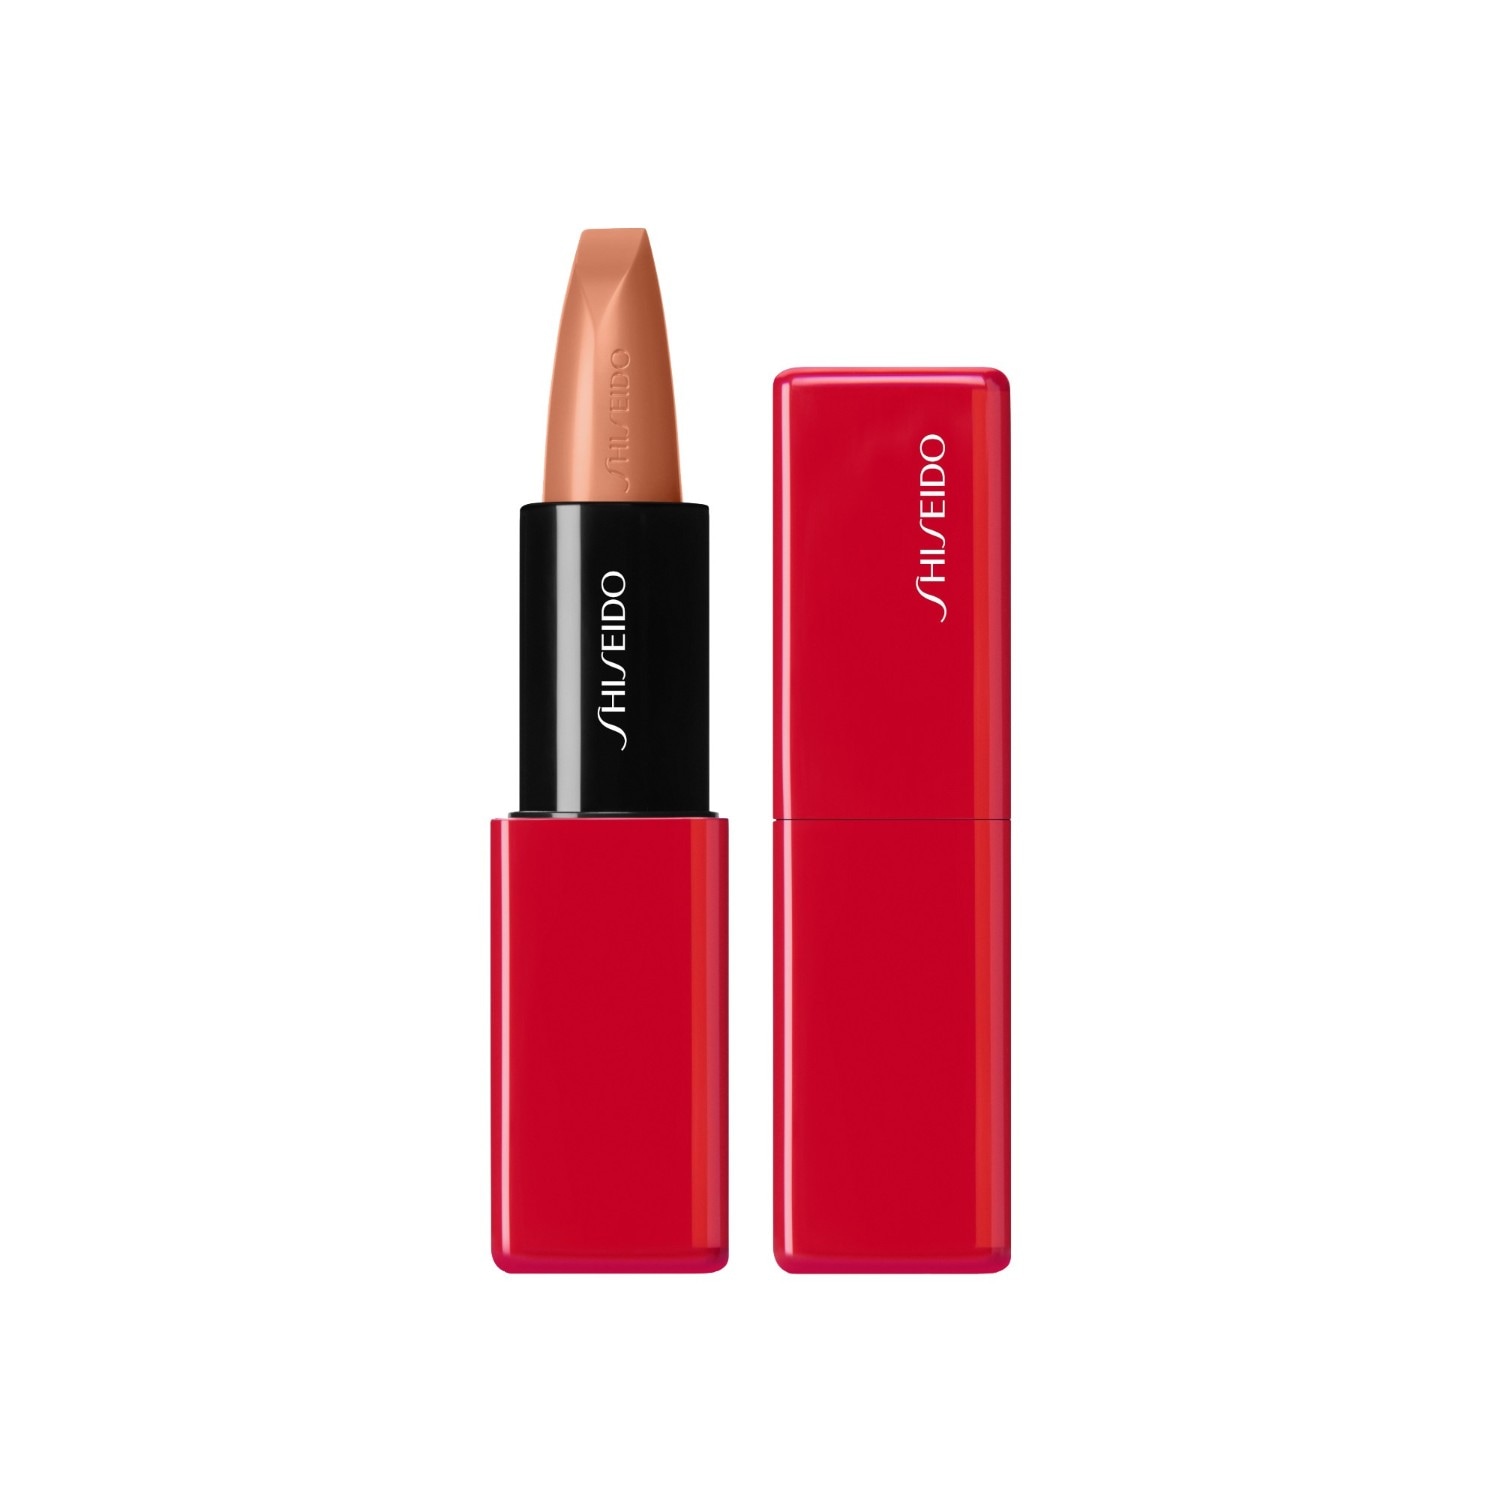 Shiseido TechnoSatin Gel Lipstick 402, Augmented Nude 403